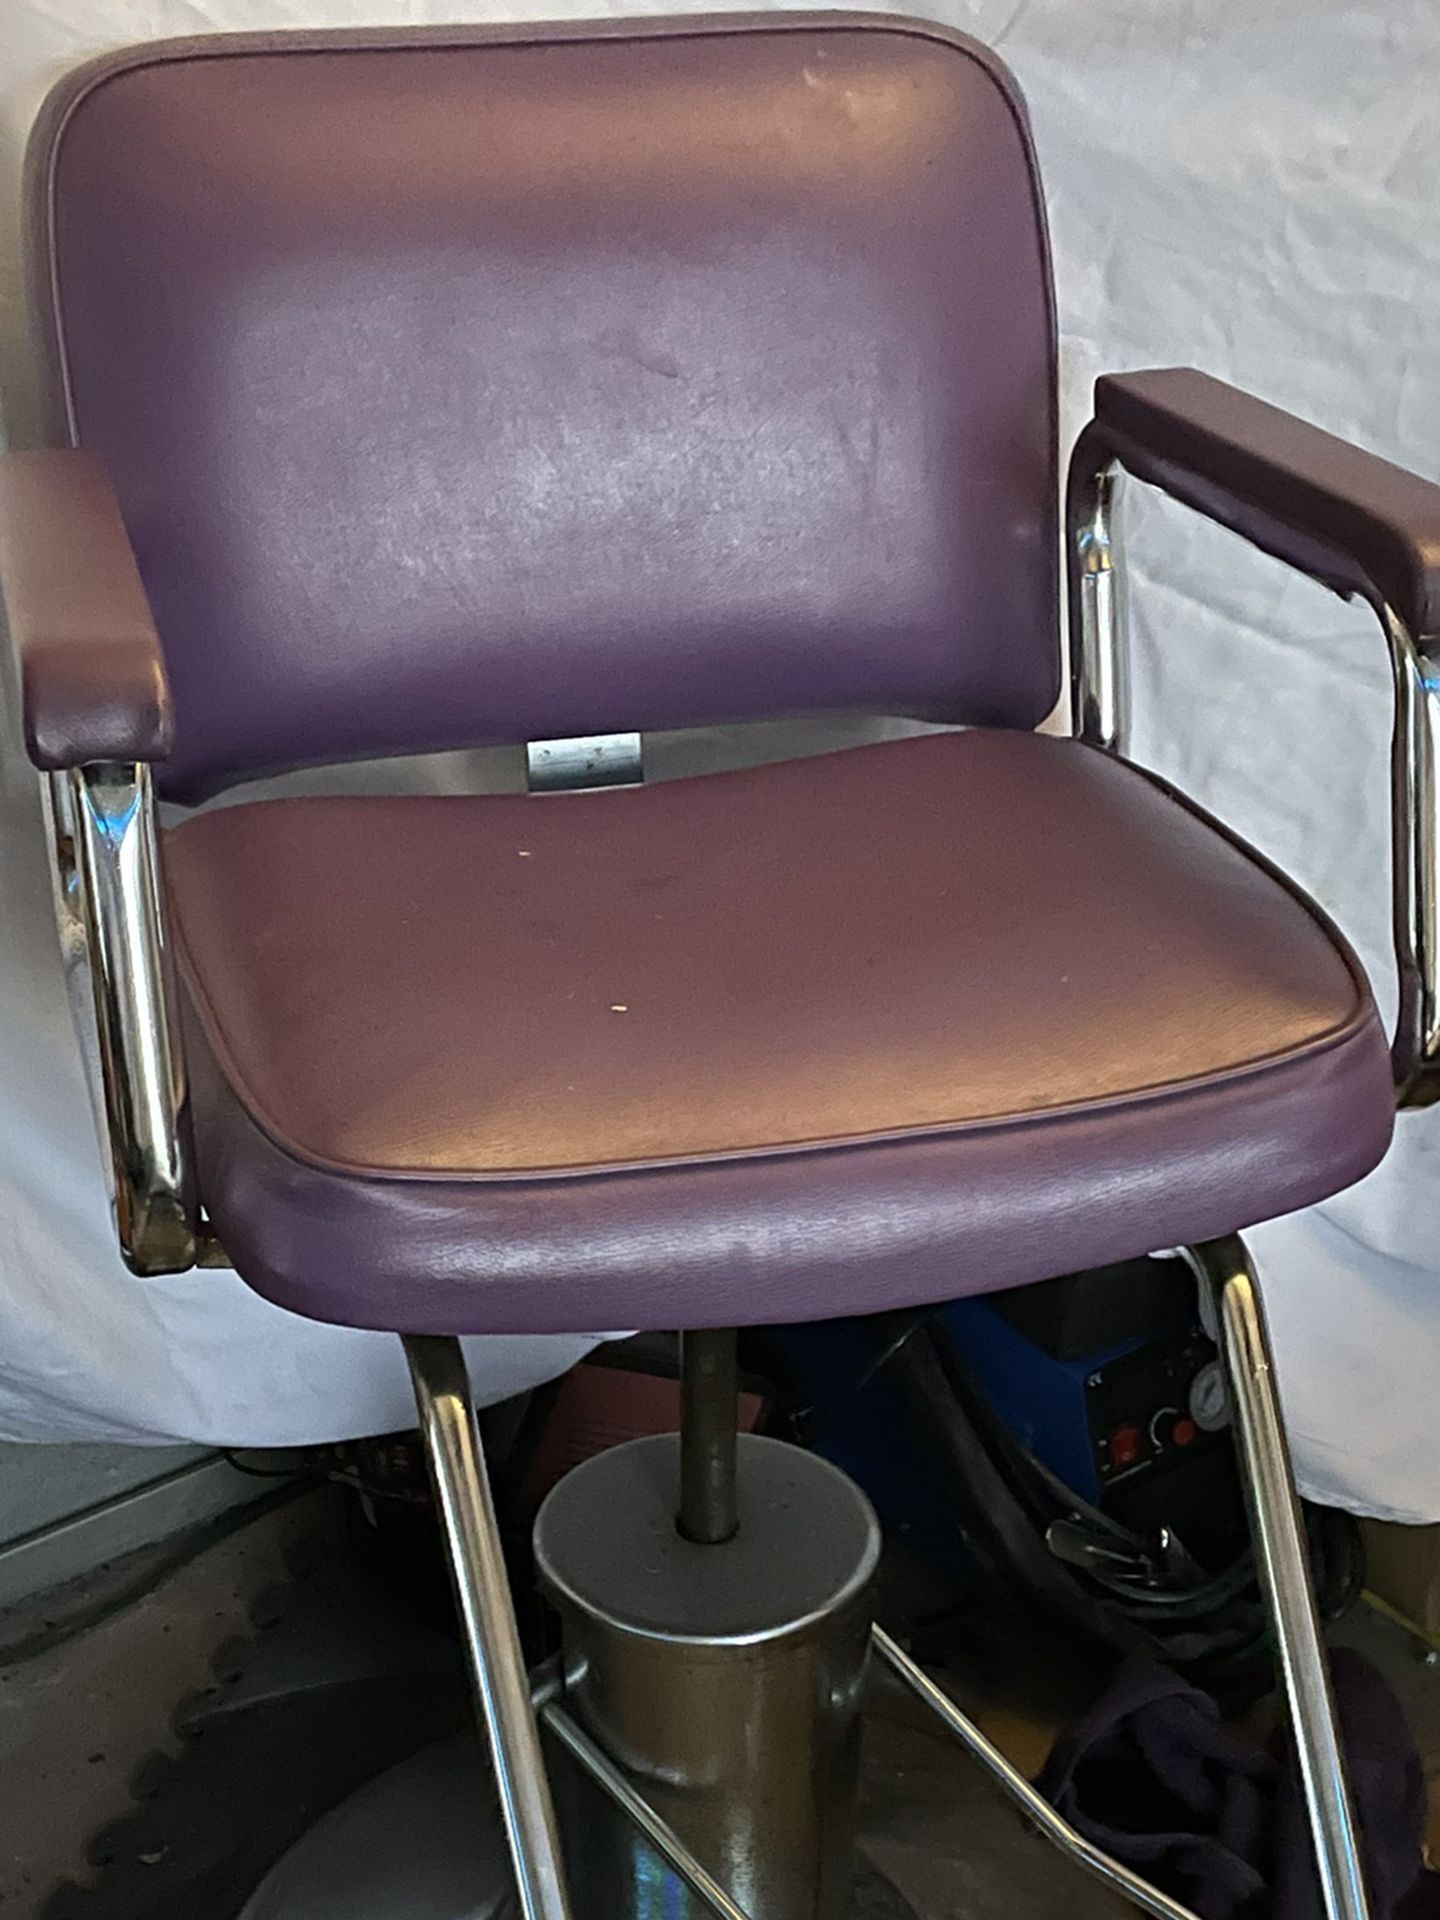 Hair Cutting Chair